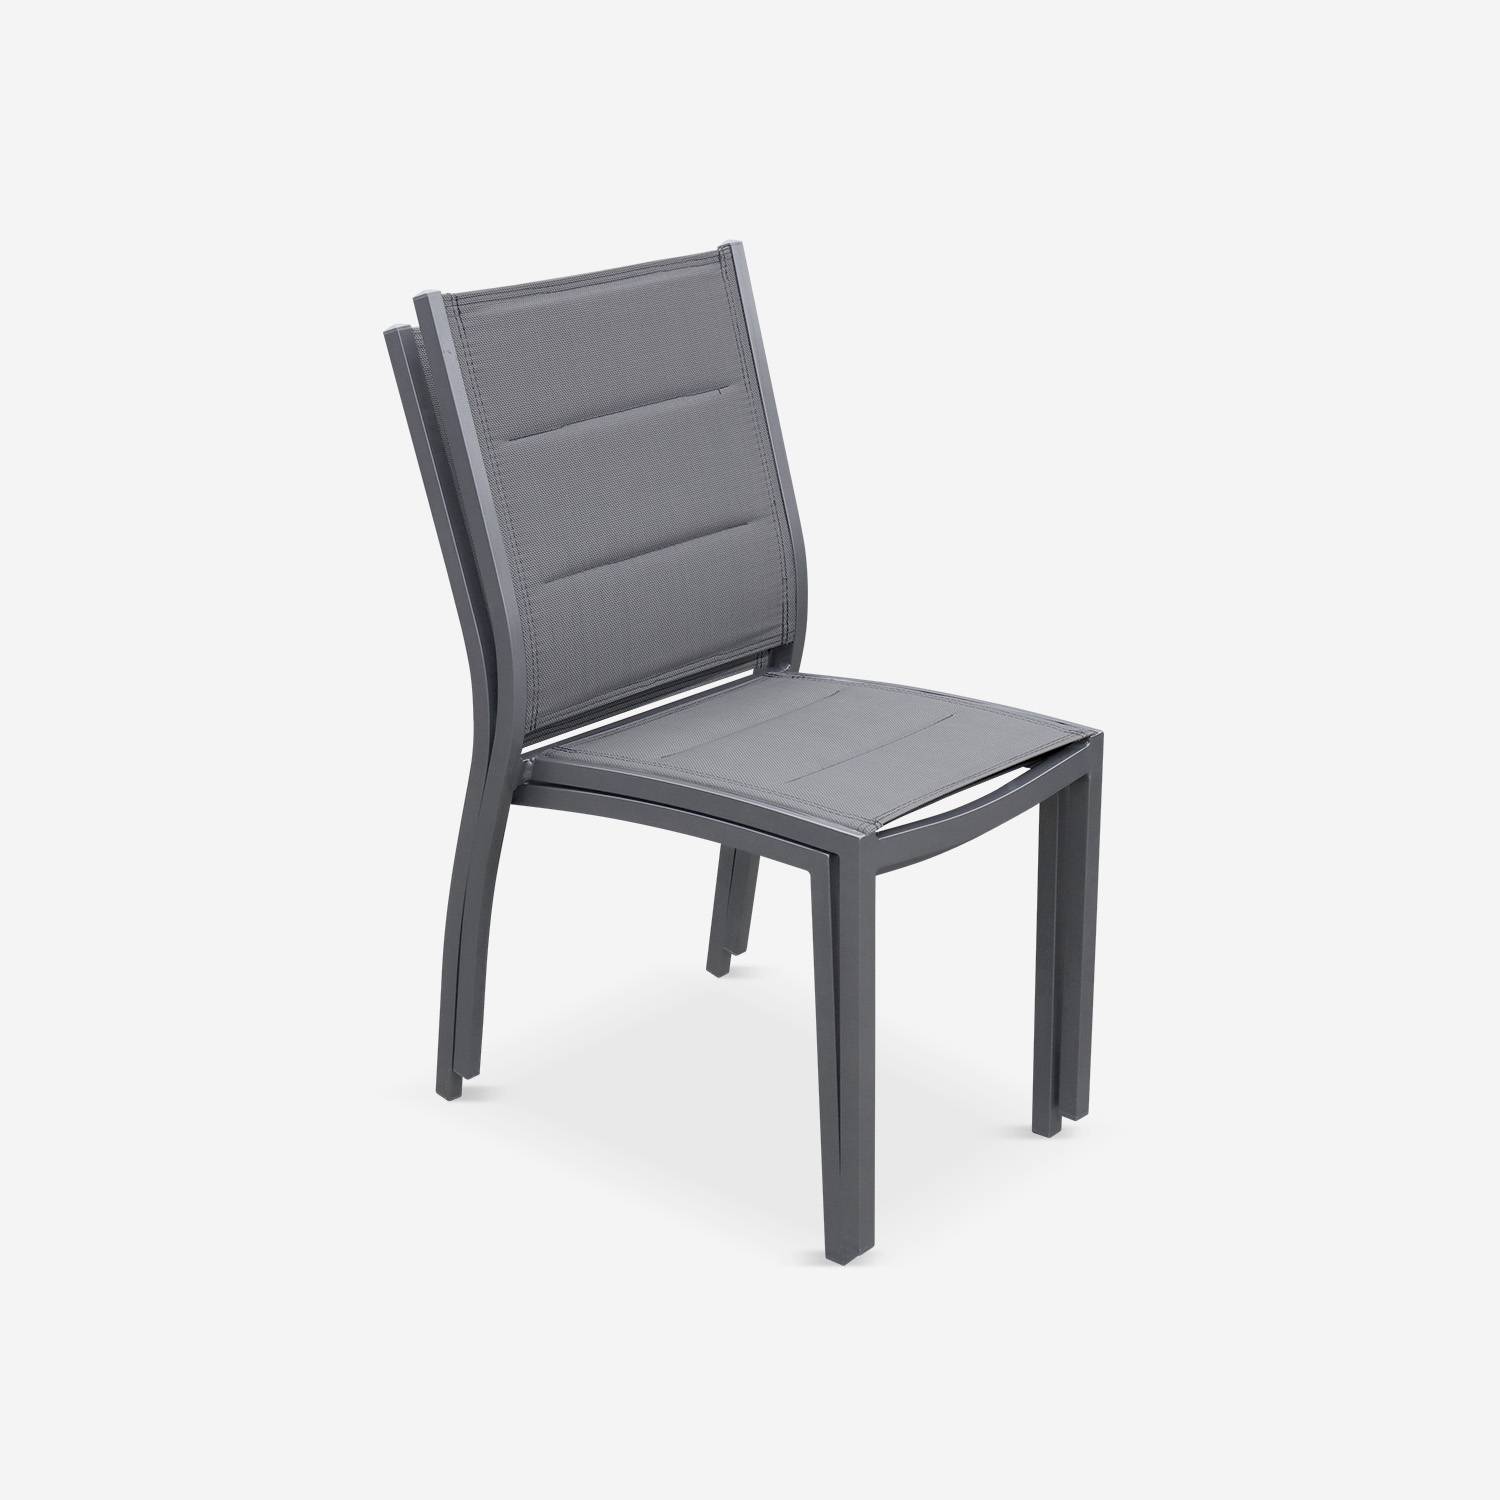 Conjunto de 2 sillas - Chicago / Odenton Antracita - En aluminio antracita y textilene gris oscuro, apilable Photo3